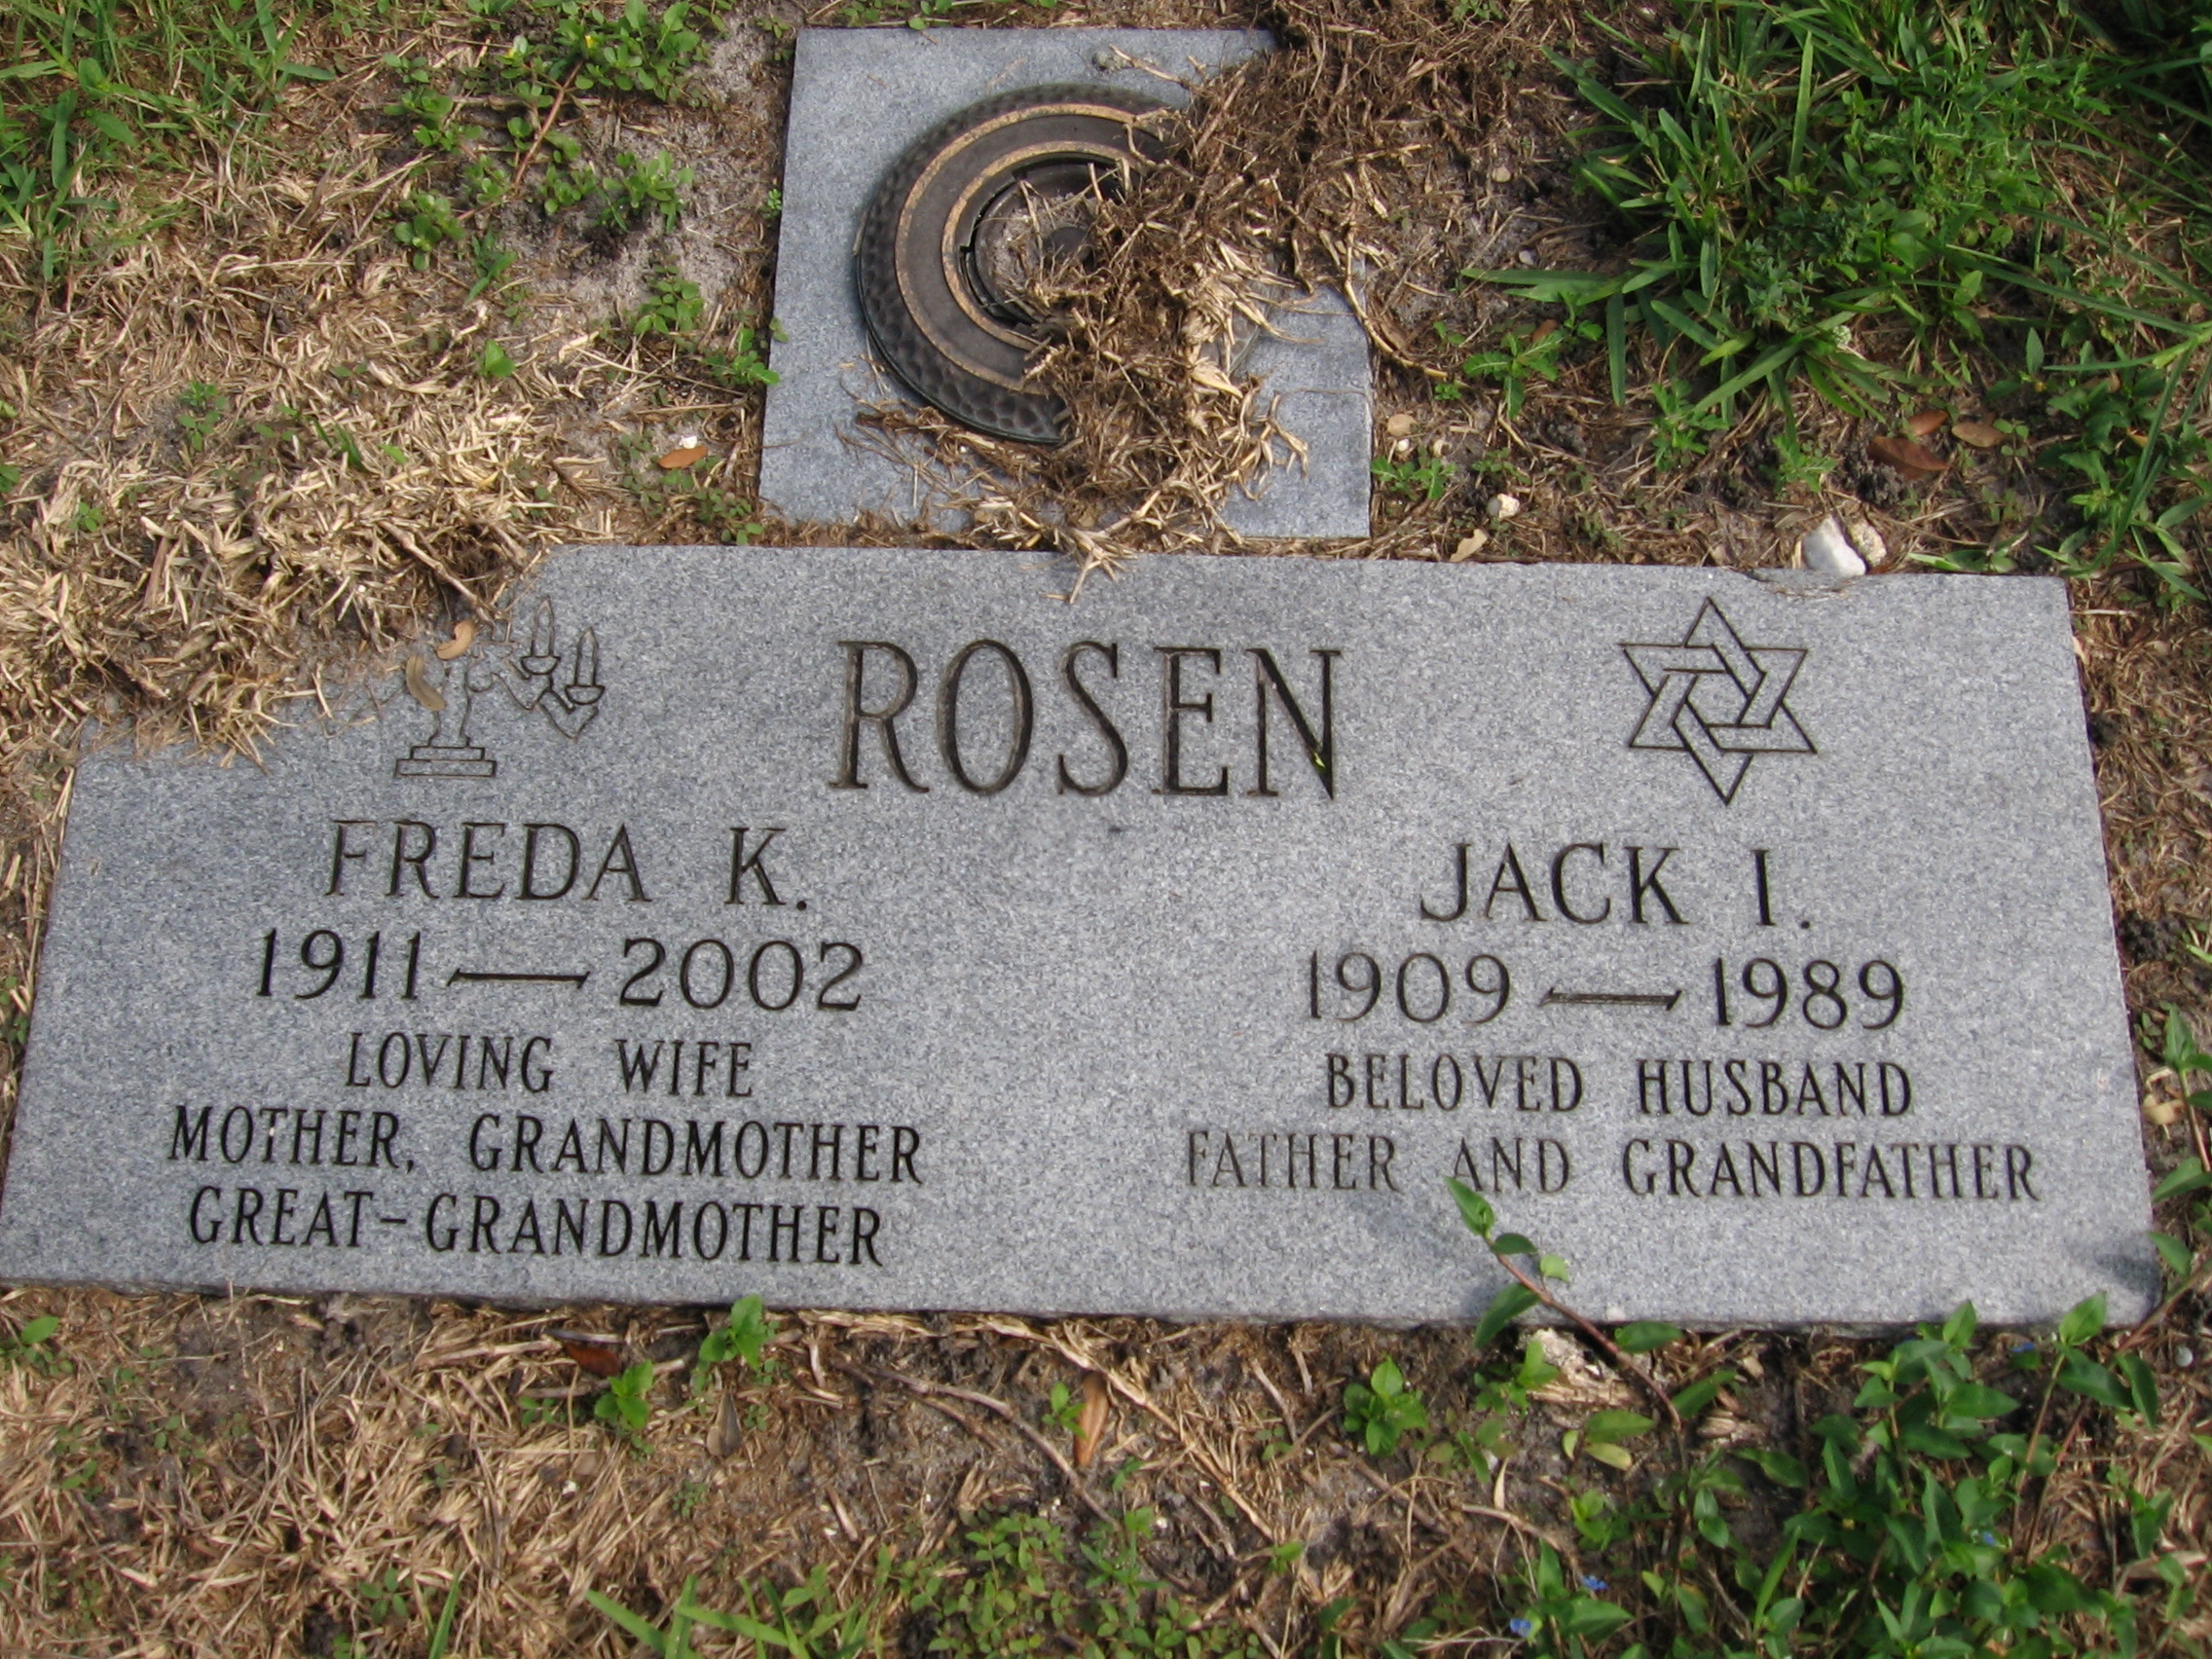 Jack I Rosen